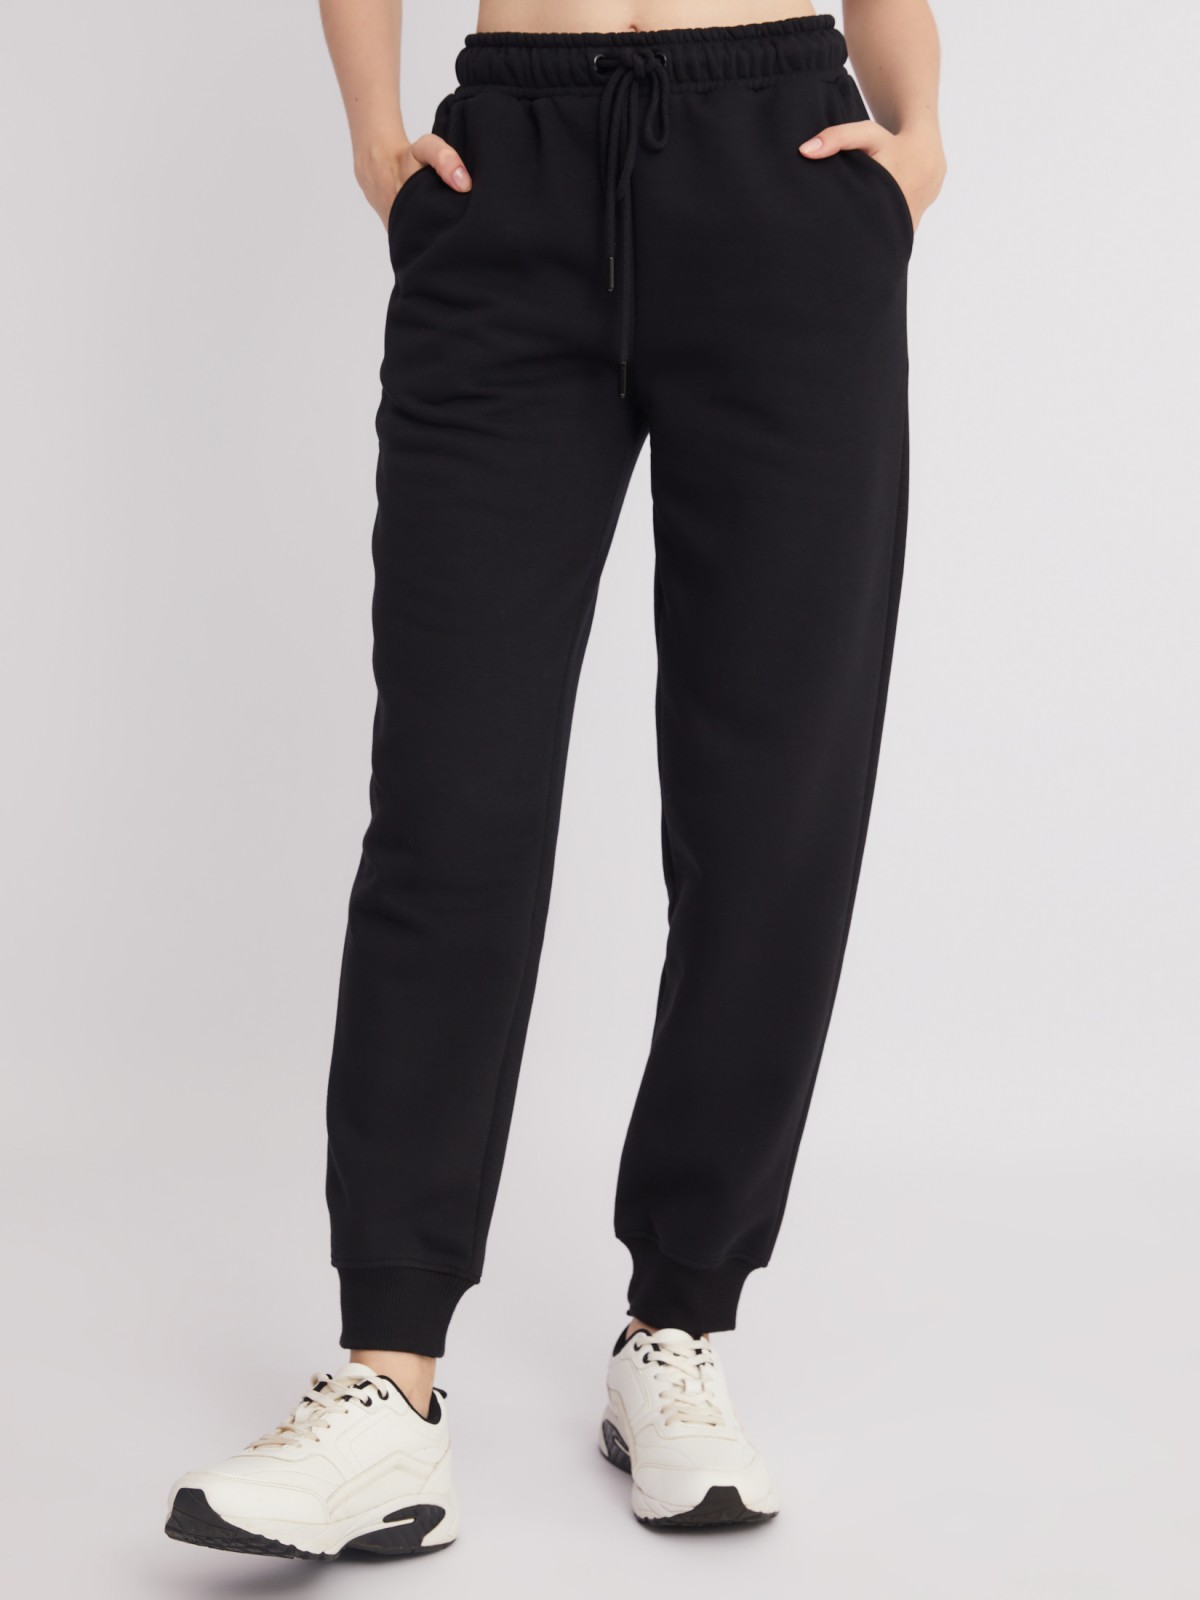 Утеплённые трикотажные брюки-джоггеры с поясом на резинке zolla 22332761Y062, цвет черный, размер XS - фото 2